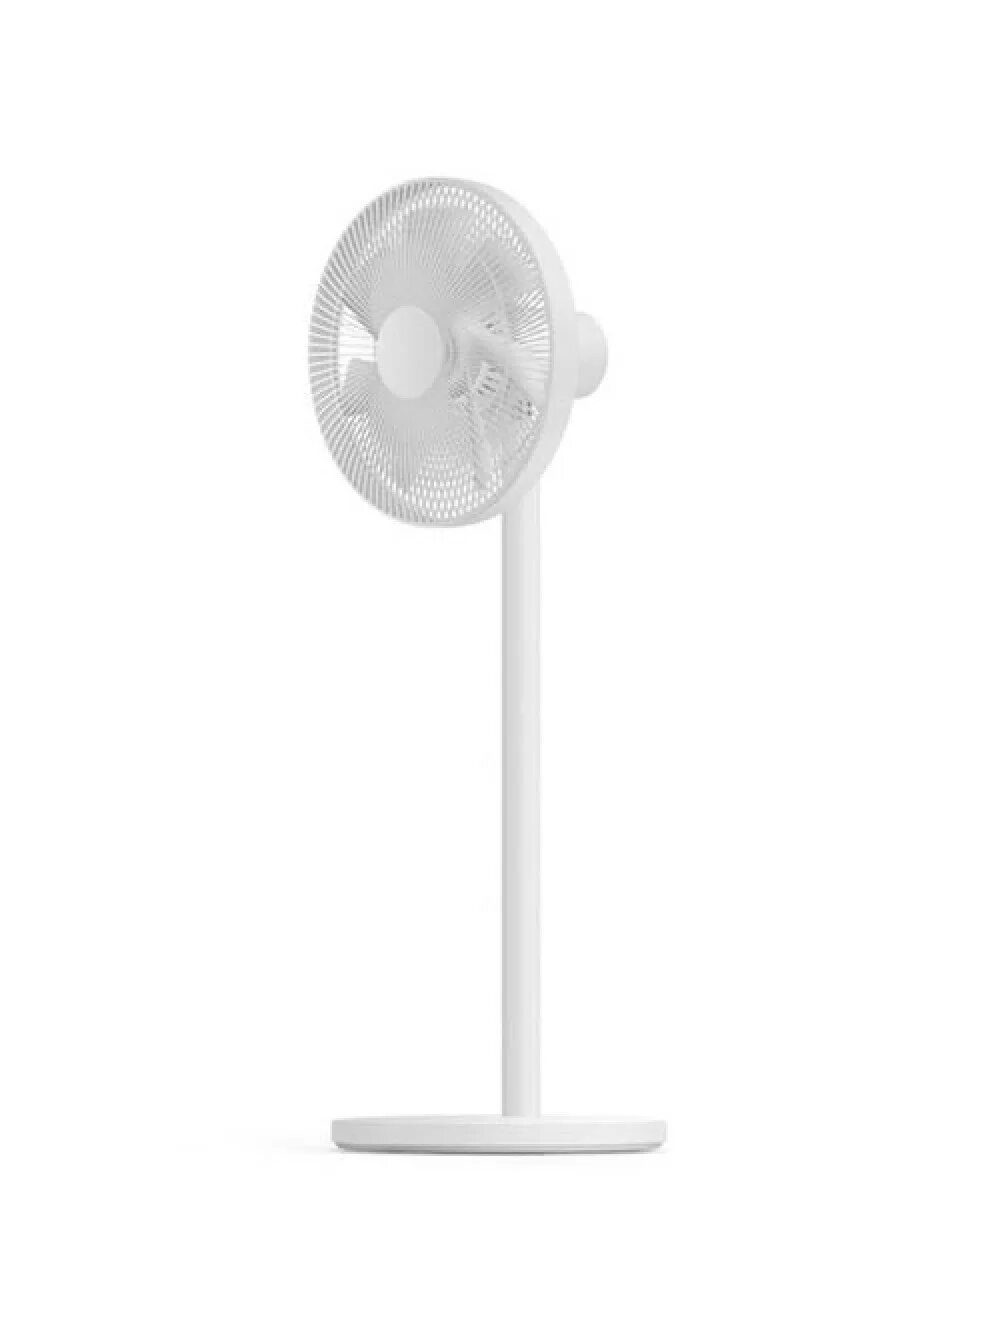 Mijia inverter fan. Вентилятор Xiaomi Mijia DC Inverter Fan 1x. Вентилятор Xiaomi Mijia DC variable Frequency Floor Fan 2 White (bplds02dm). Xiaomi Smart standing Fan 2. Вентилятор mi Smart standing Fan 2 eu.